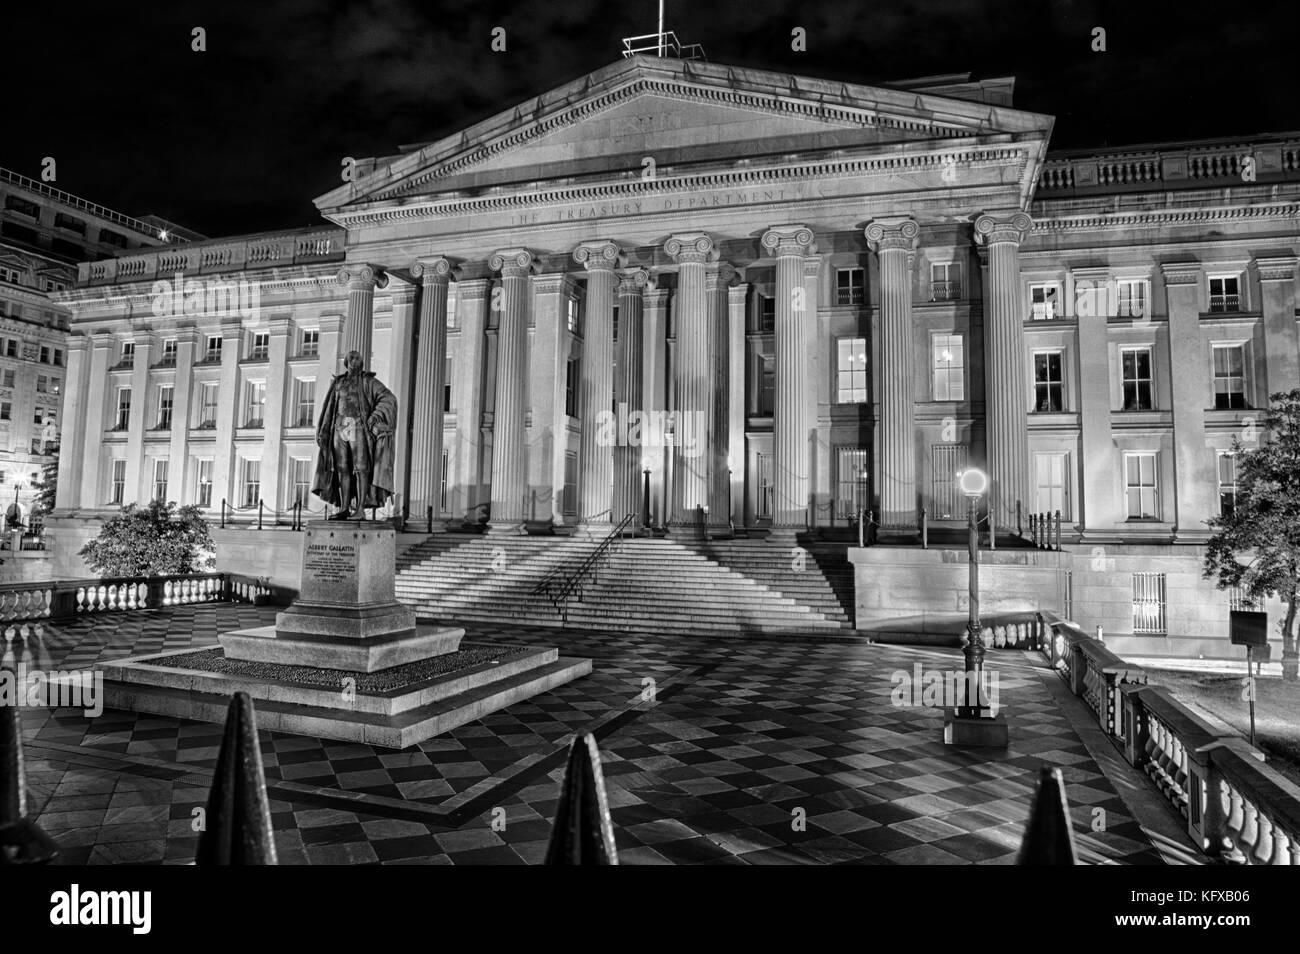 Settembre 12, 2017, Washington, DC, Stati Uniti d'America: il tesoro usa building illuminato di notte con la statua di gallatin prominente dalla parte anteriore. Foto Stock